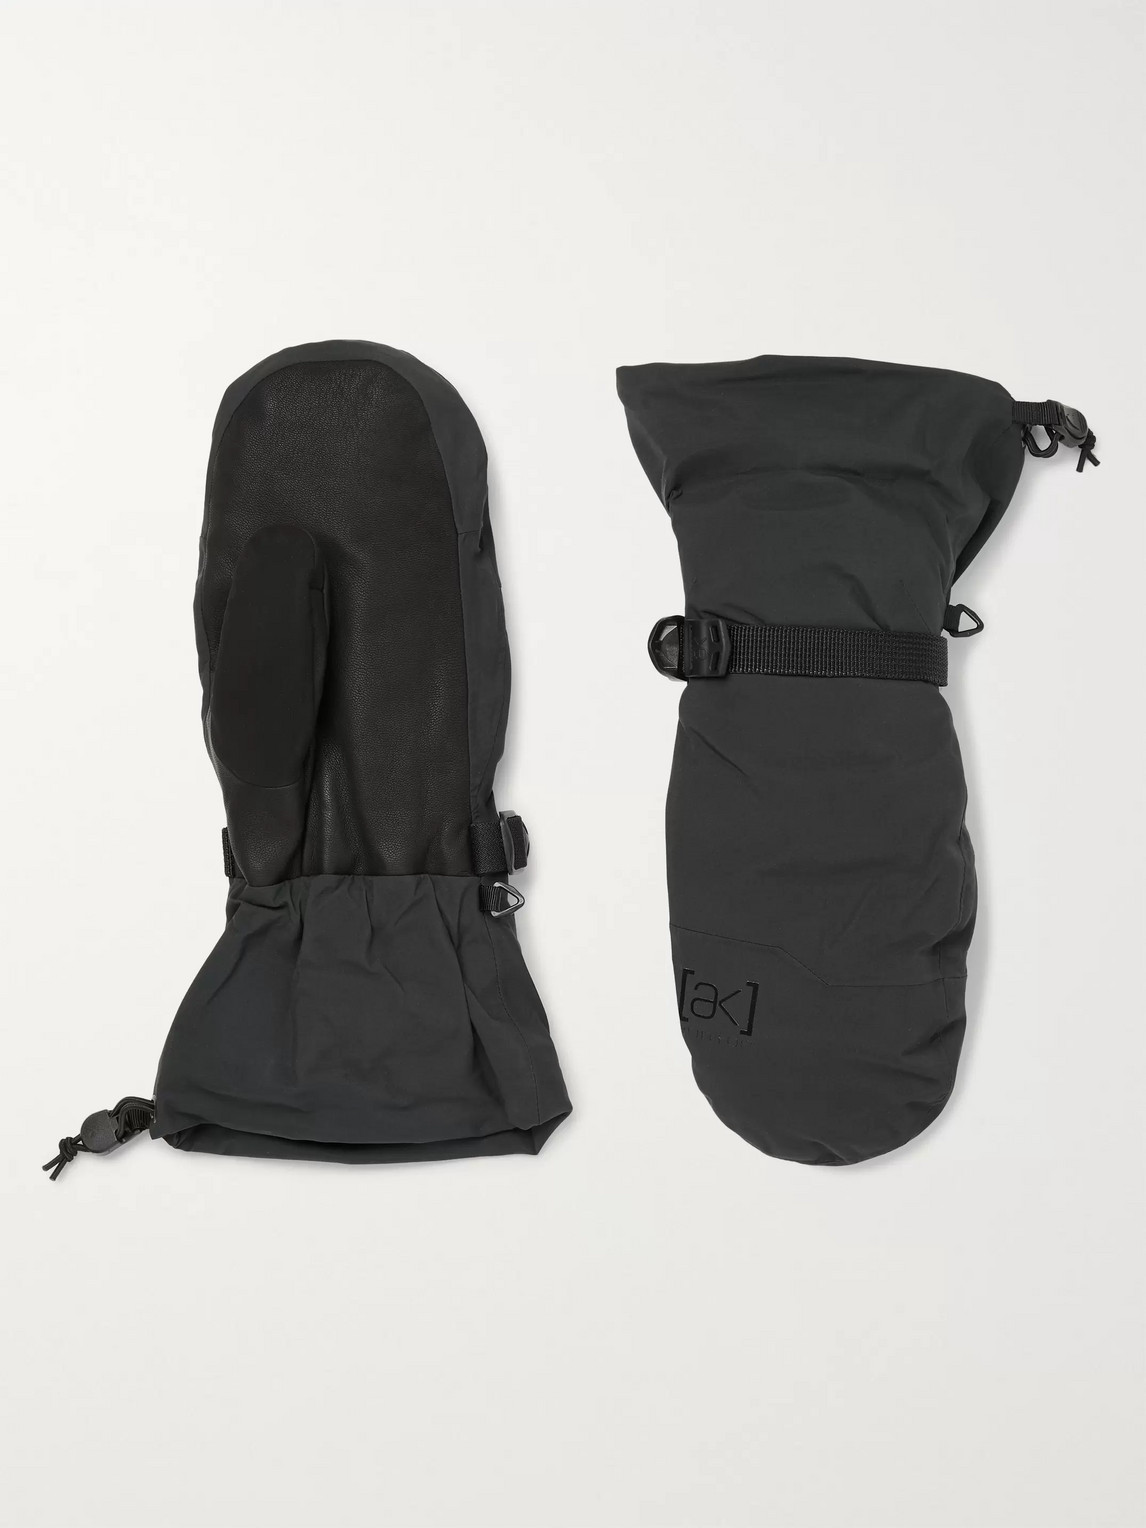 Burton [ak] Hover Gore-tex 3l And Leather Ski Gloves In Black